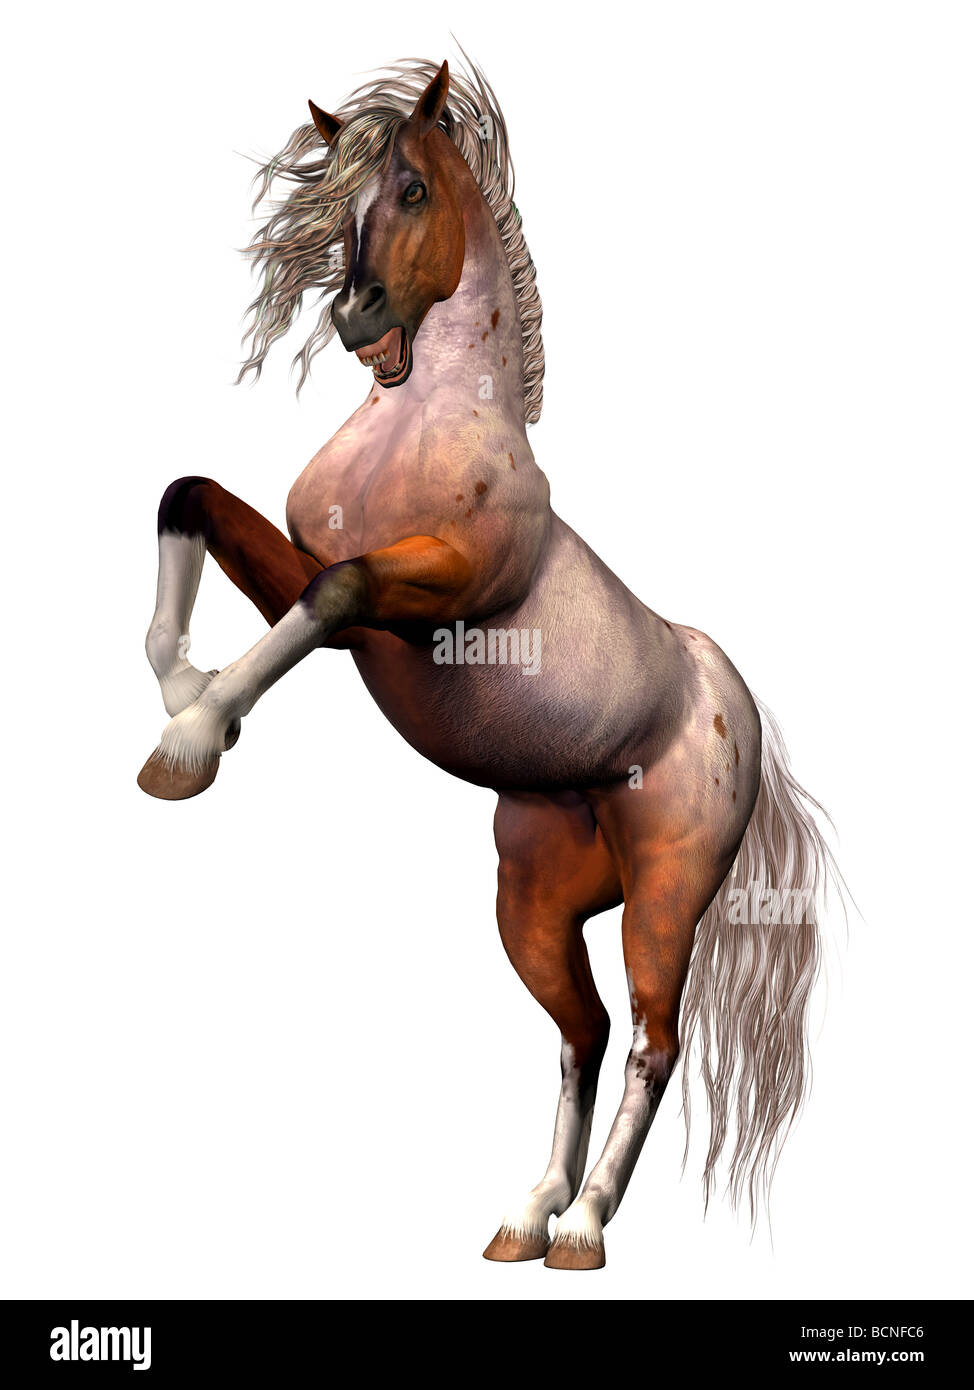 Eine Brabant Bay Brut des Pferds im Zorn und in Defnese von sich selbst oder seine Gattin, Aufzucht oder anzugreifen. Stockfoto